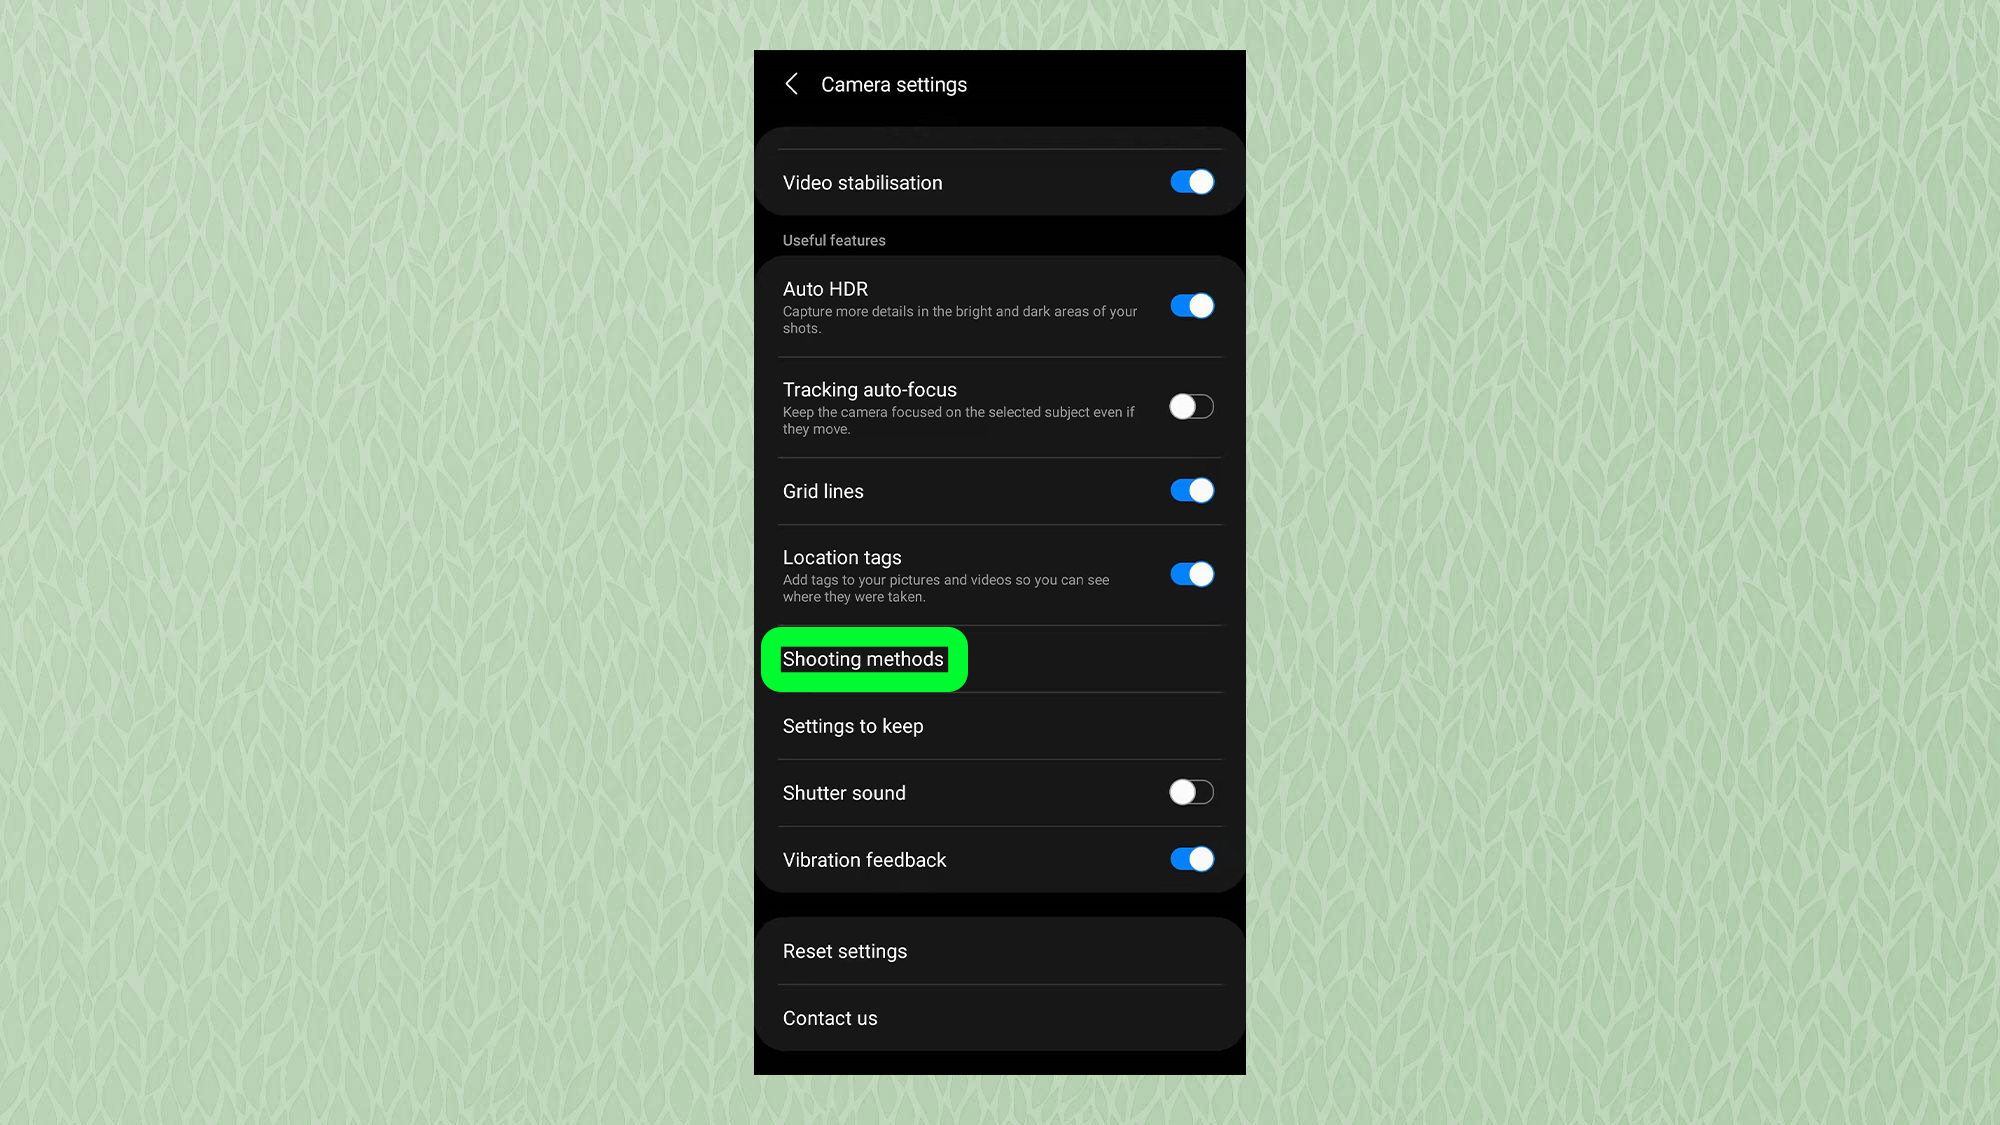 Снимок экрана из меню настроек приложения камеры Samsung, на котором выделен параметр «Методы съемки».